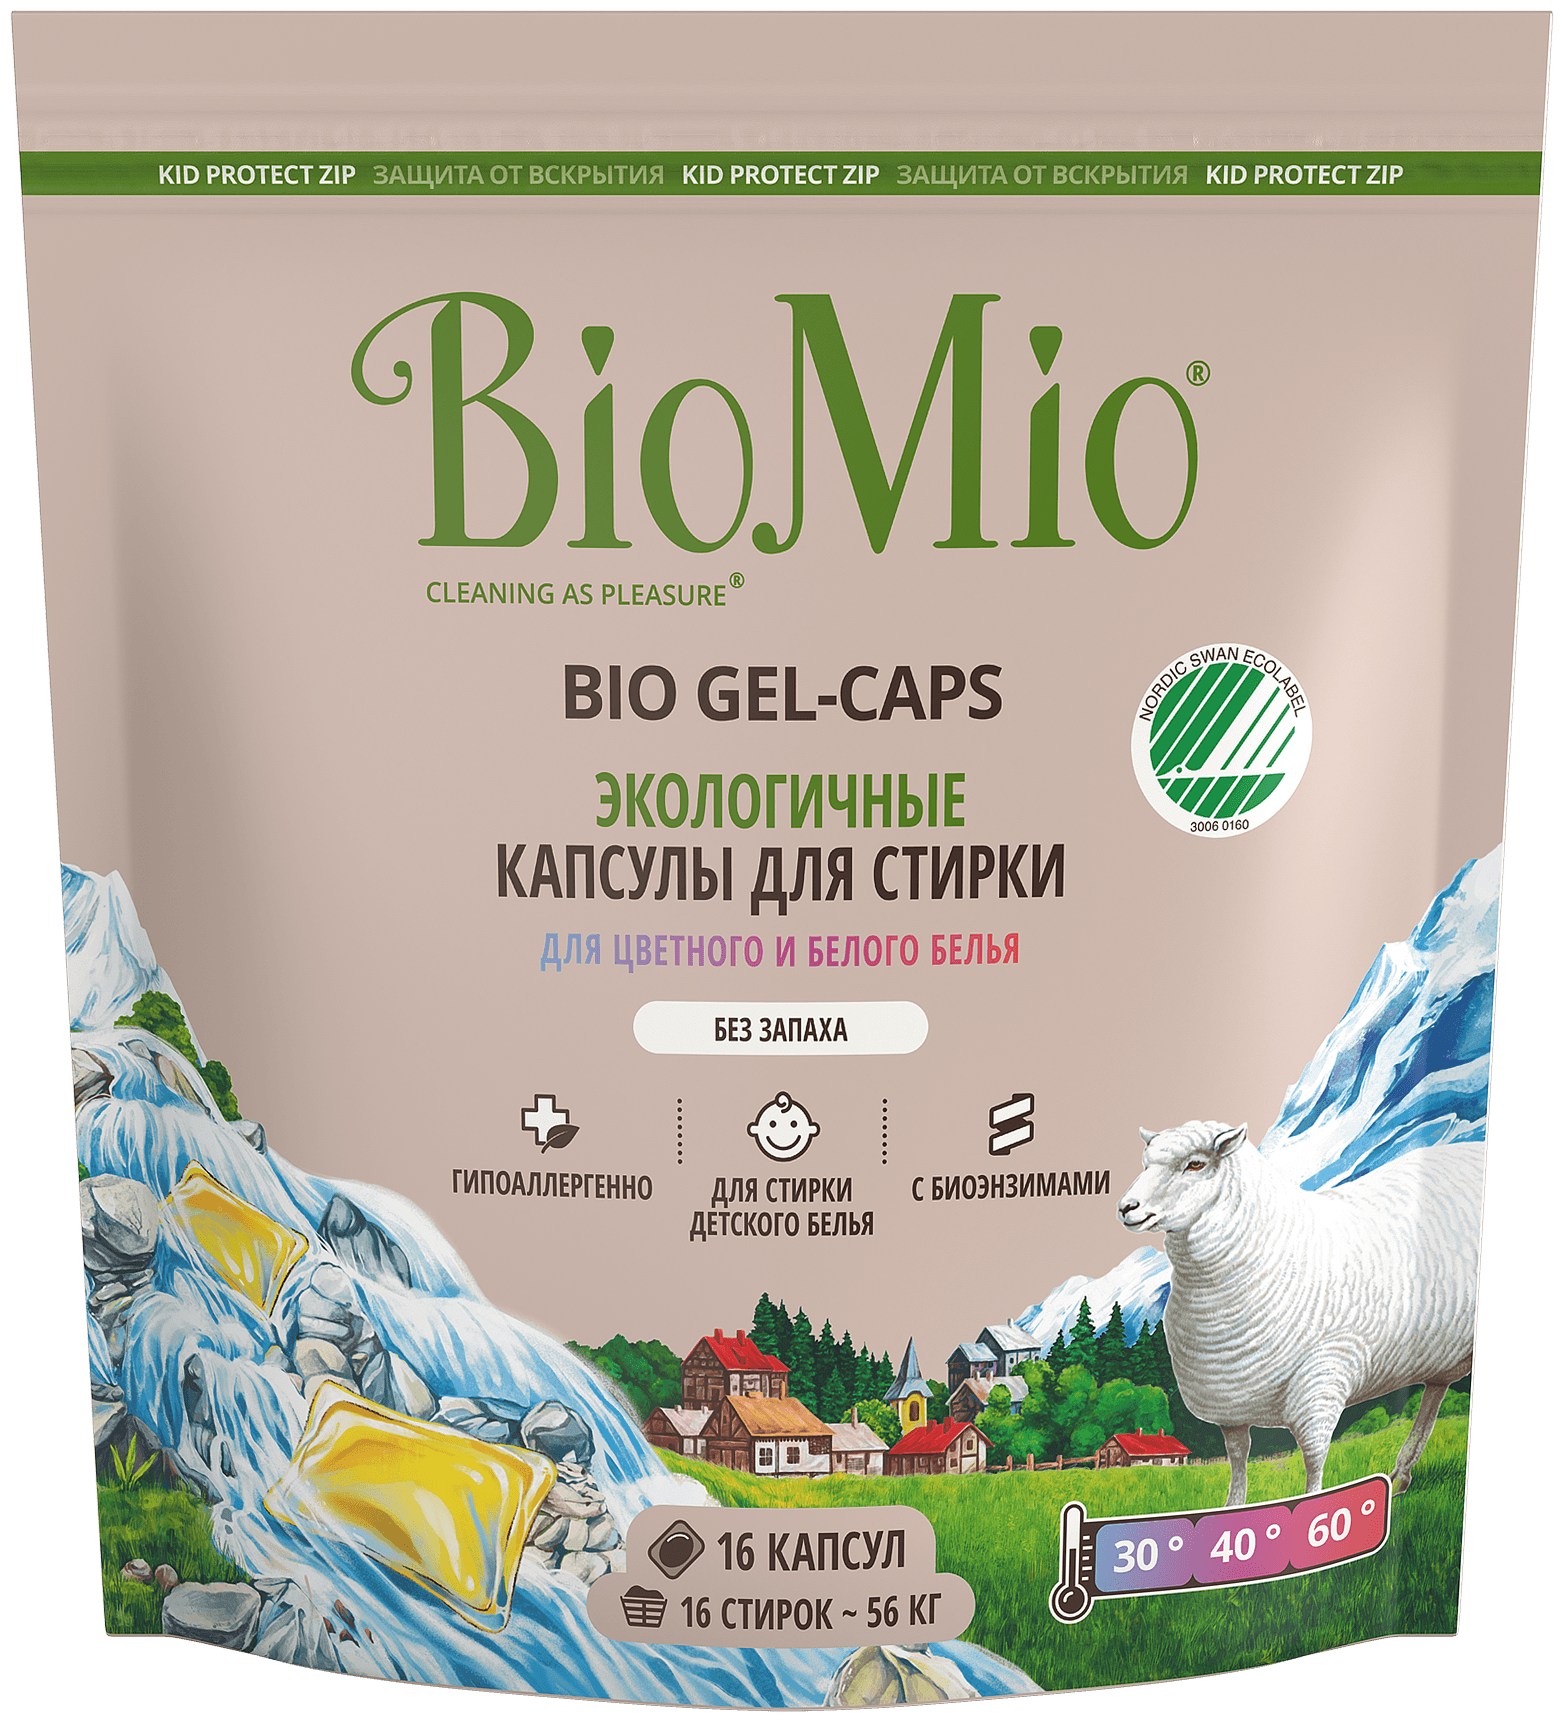 Капсулы для стирки Biomio Bio Gel-Caps для цветного и белого белья, без запаха, 16шт